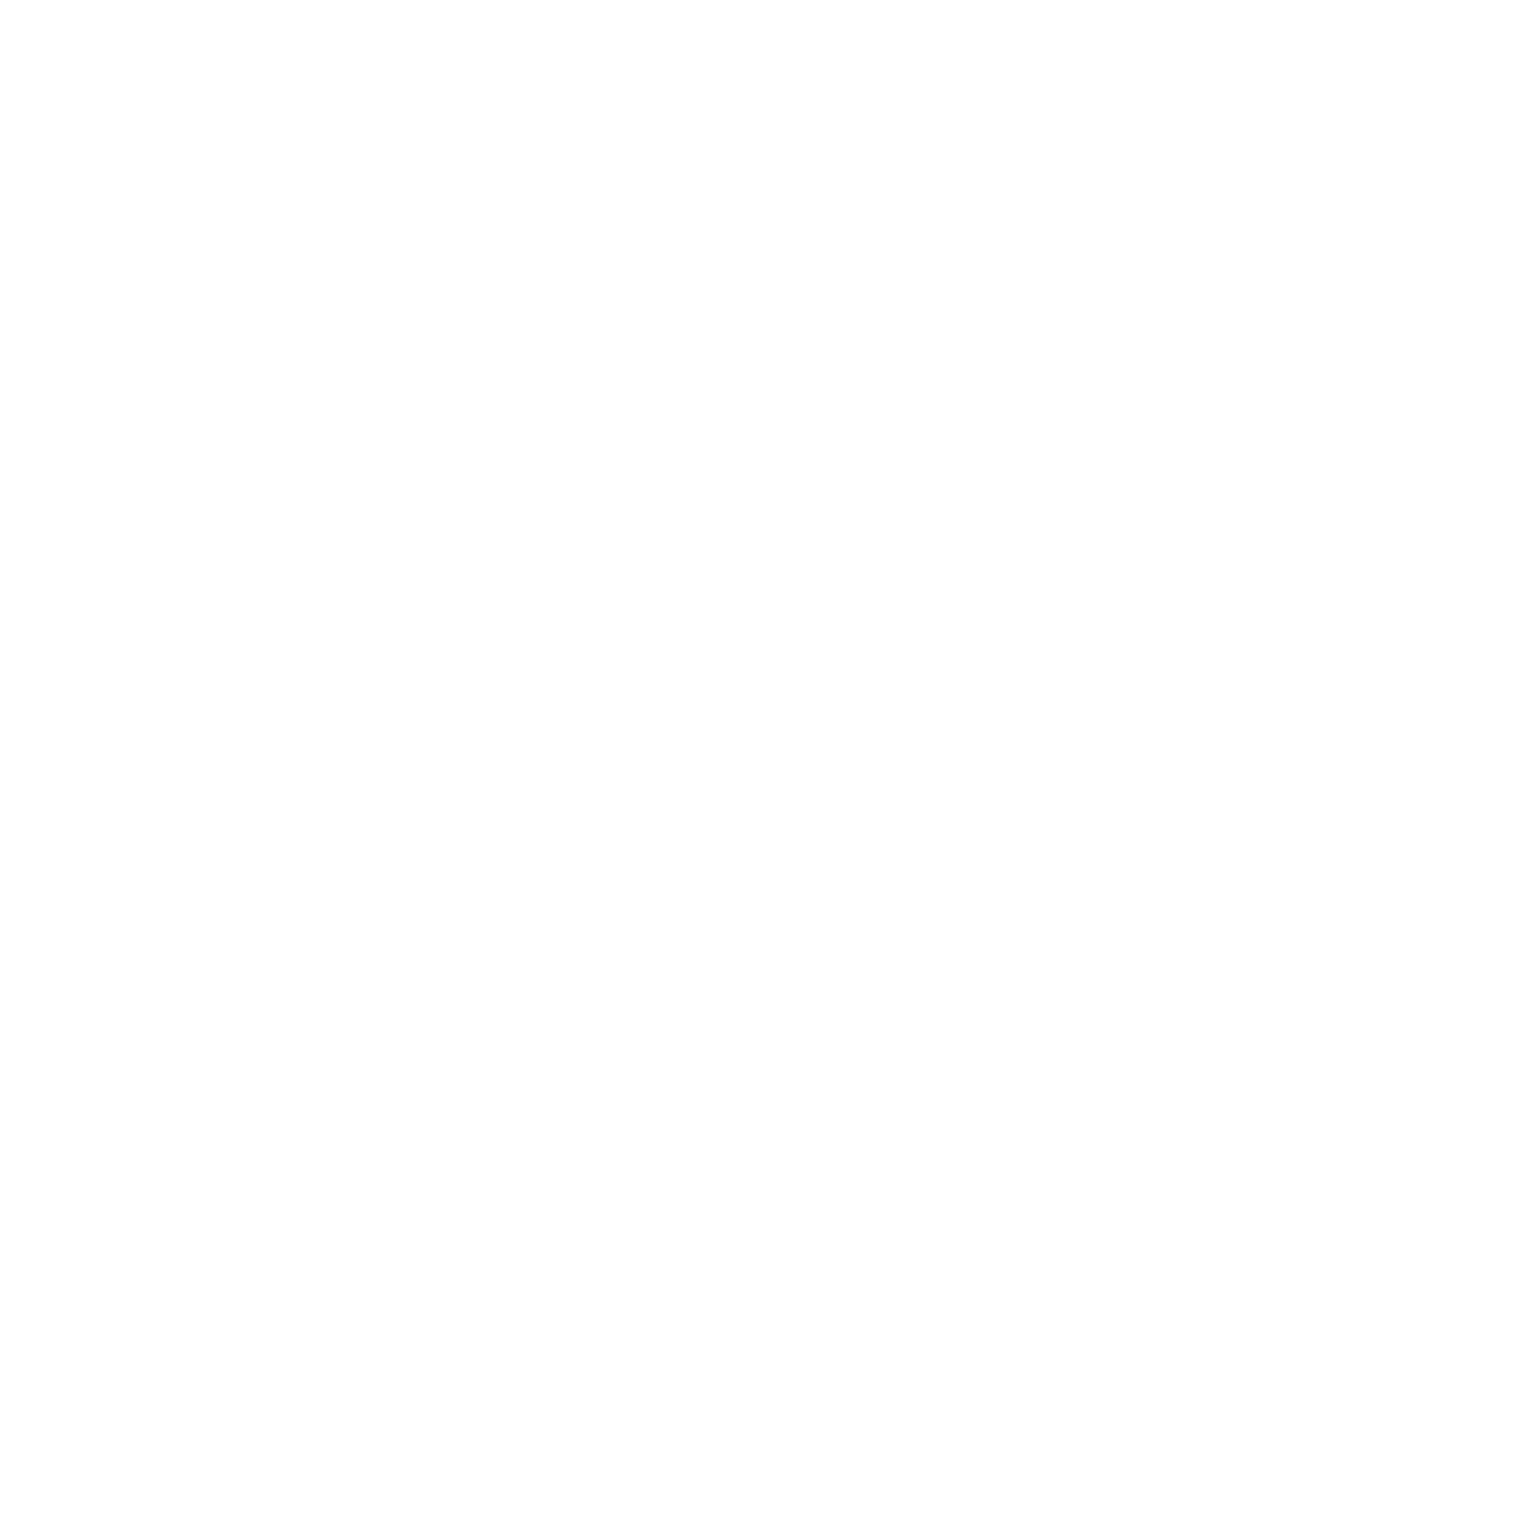 Rubrik logo for dark backgrounds (transparent PNG)